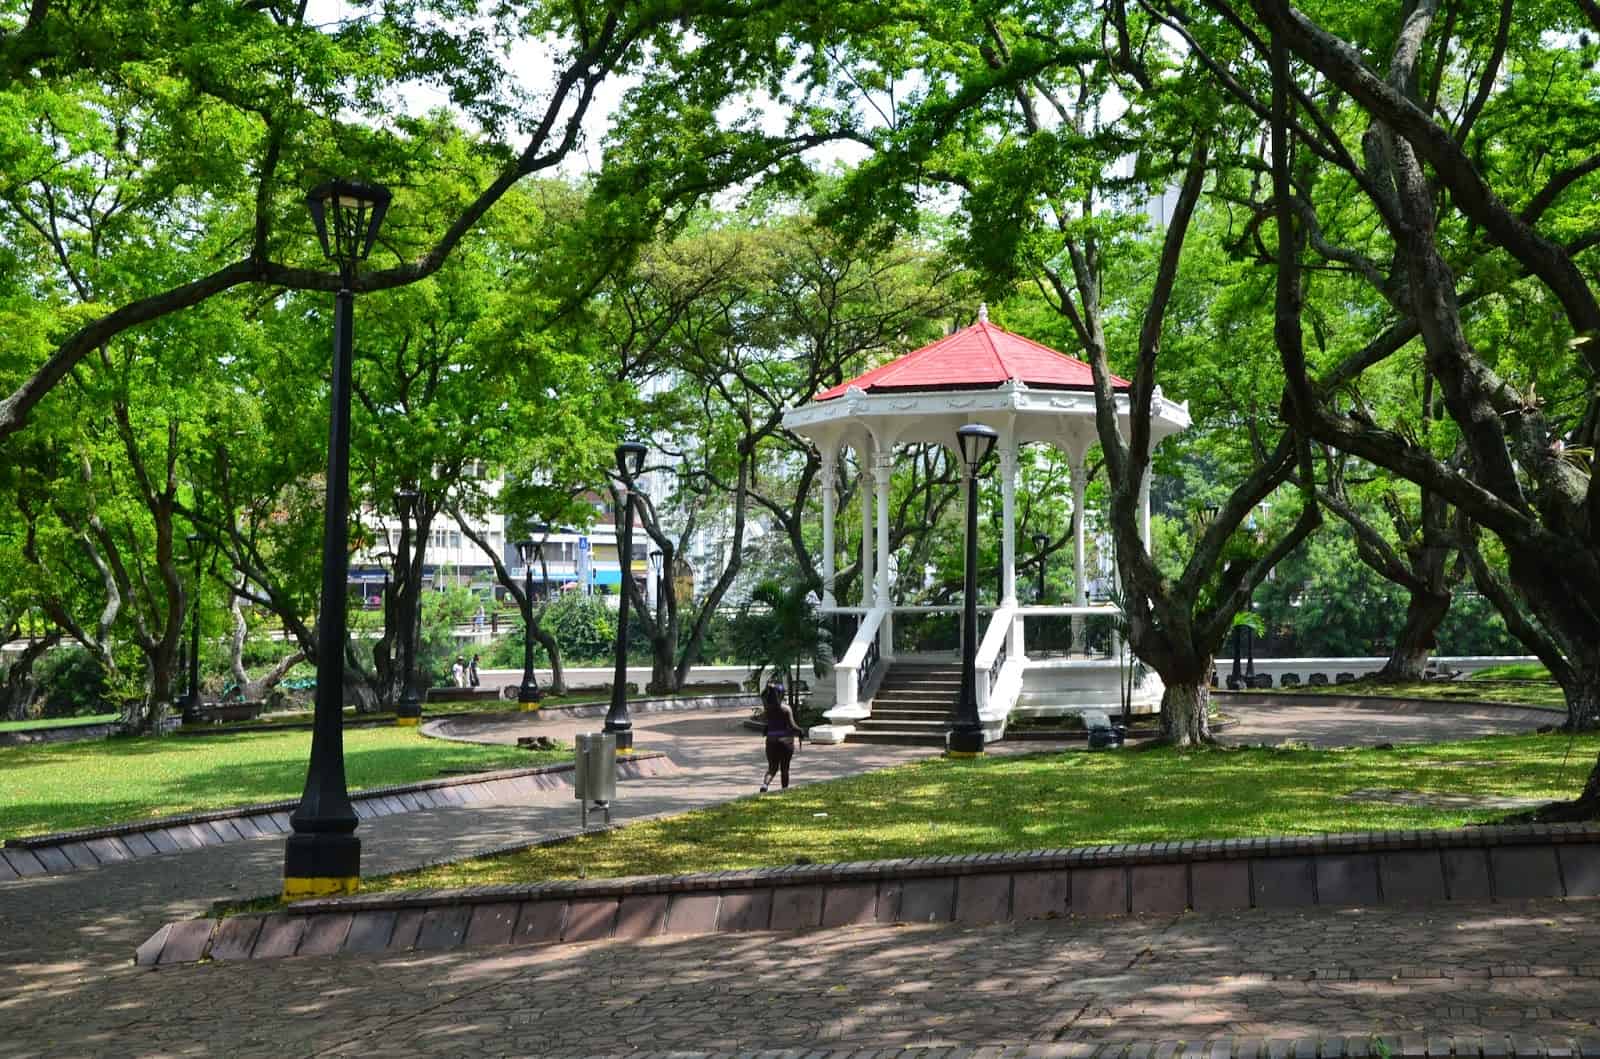 Parque Simón Bolívar in Cali, Colombia